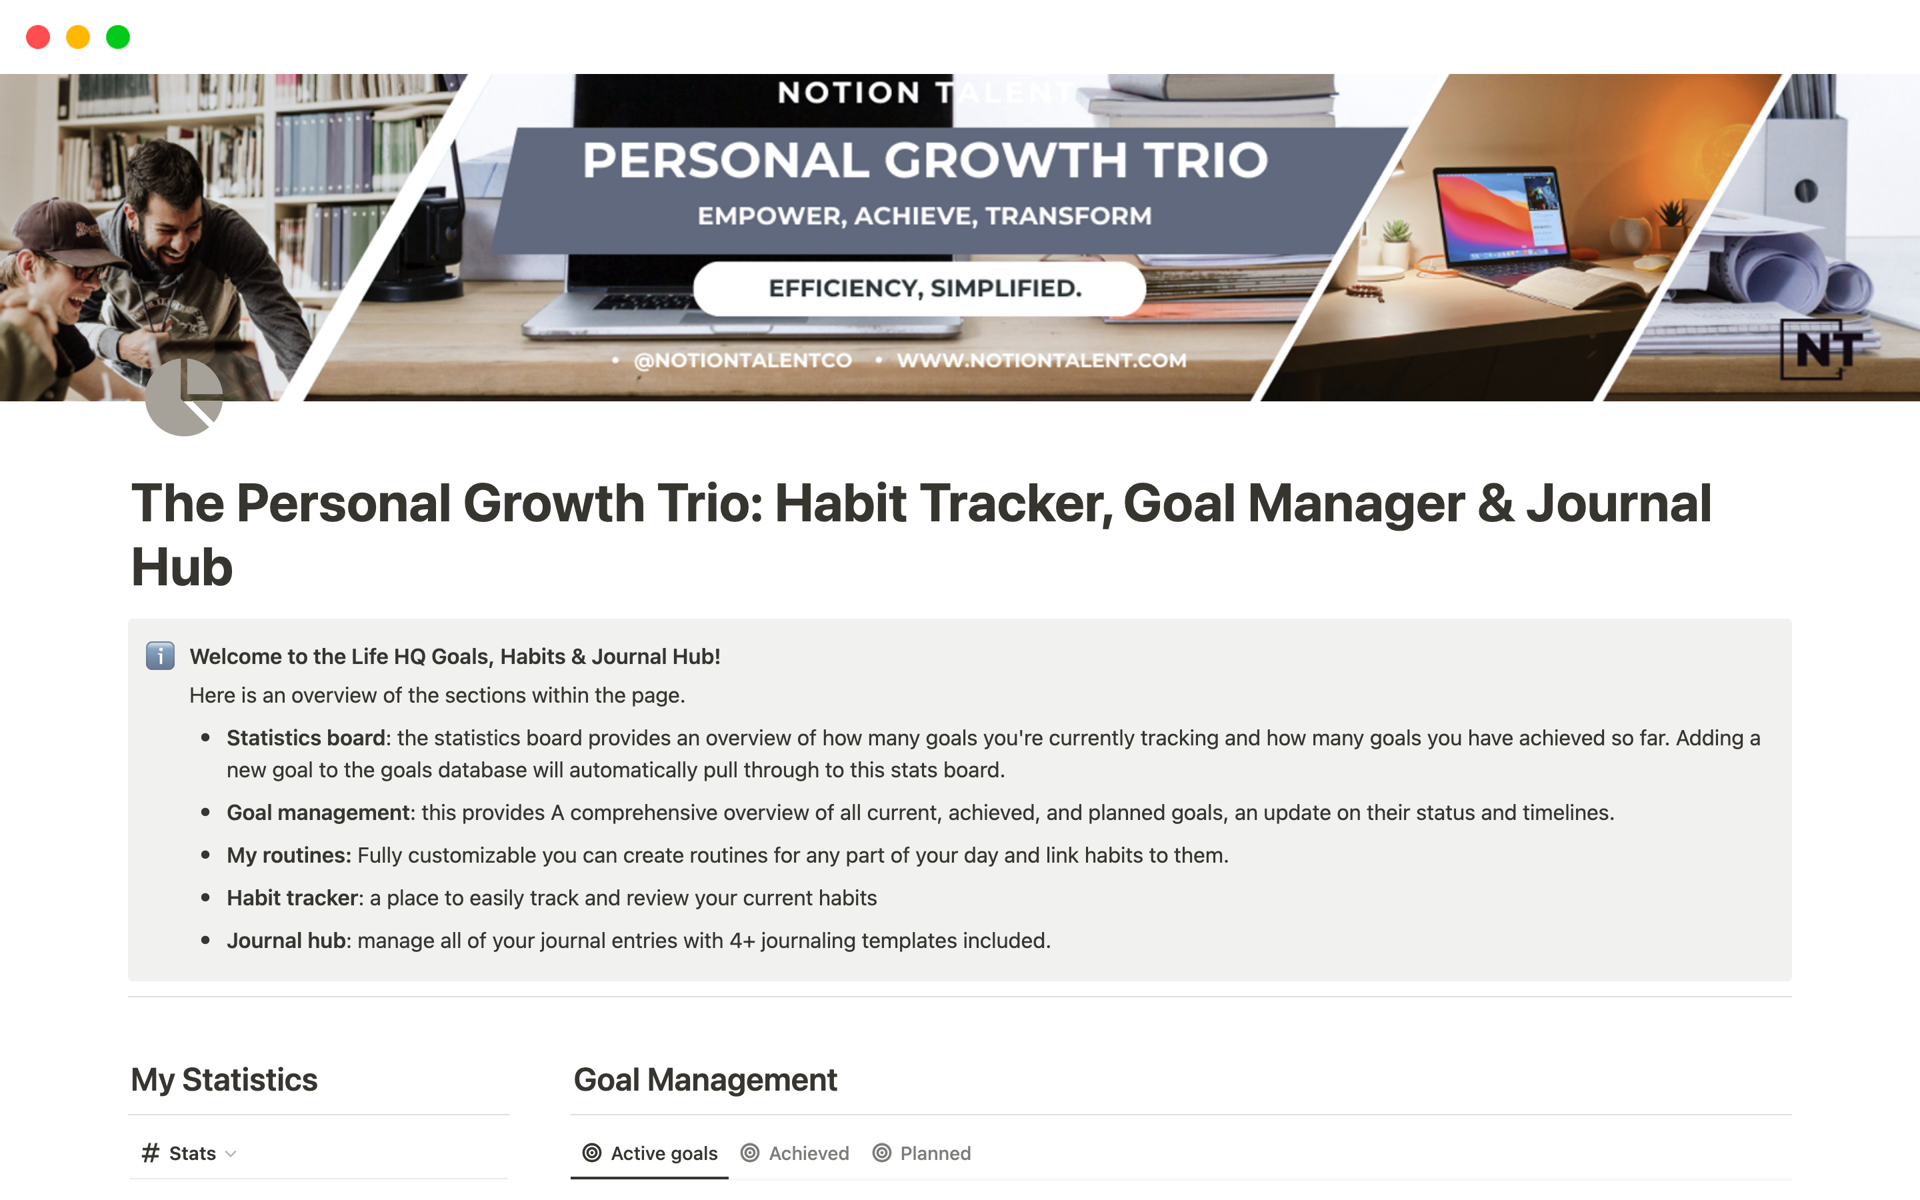 Uma prévia do modelo para The Personal Growth Trio: Habits, Goals & Journal